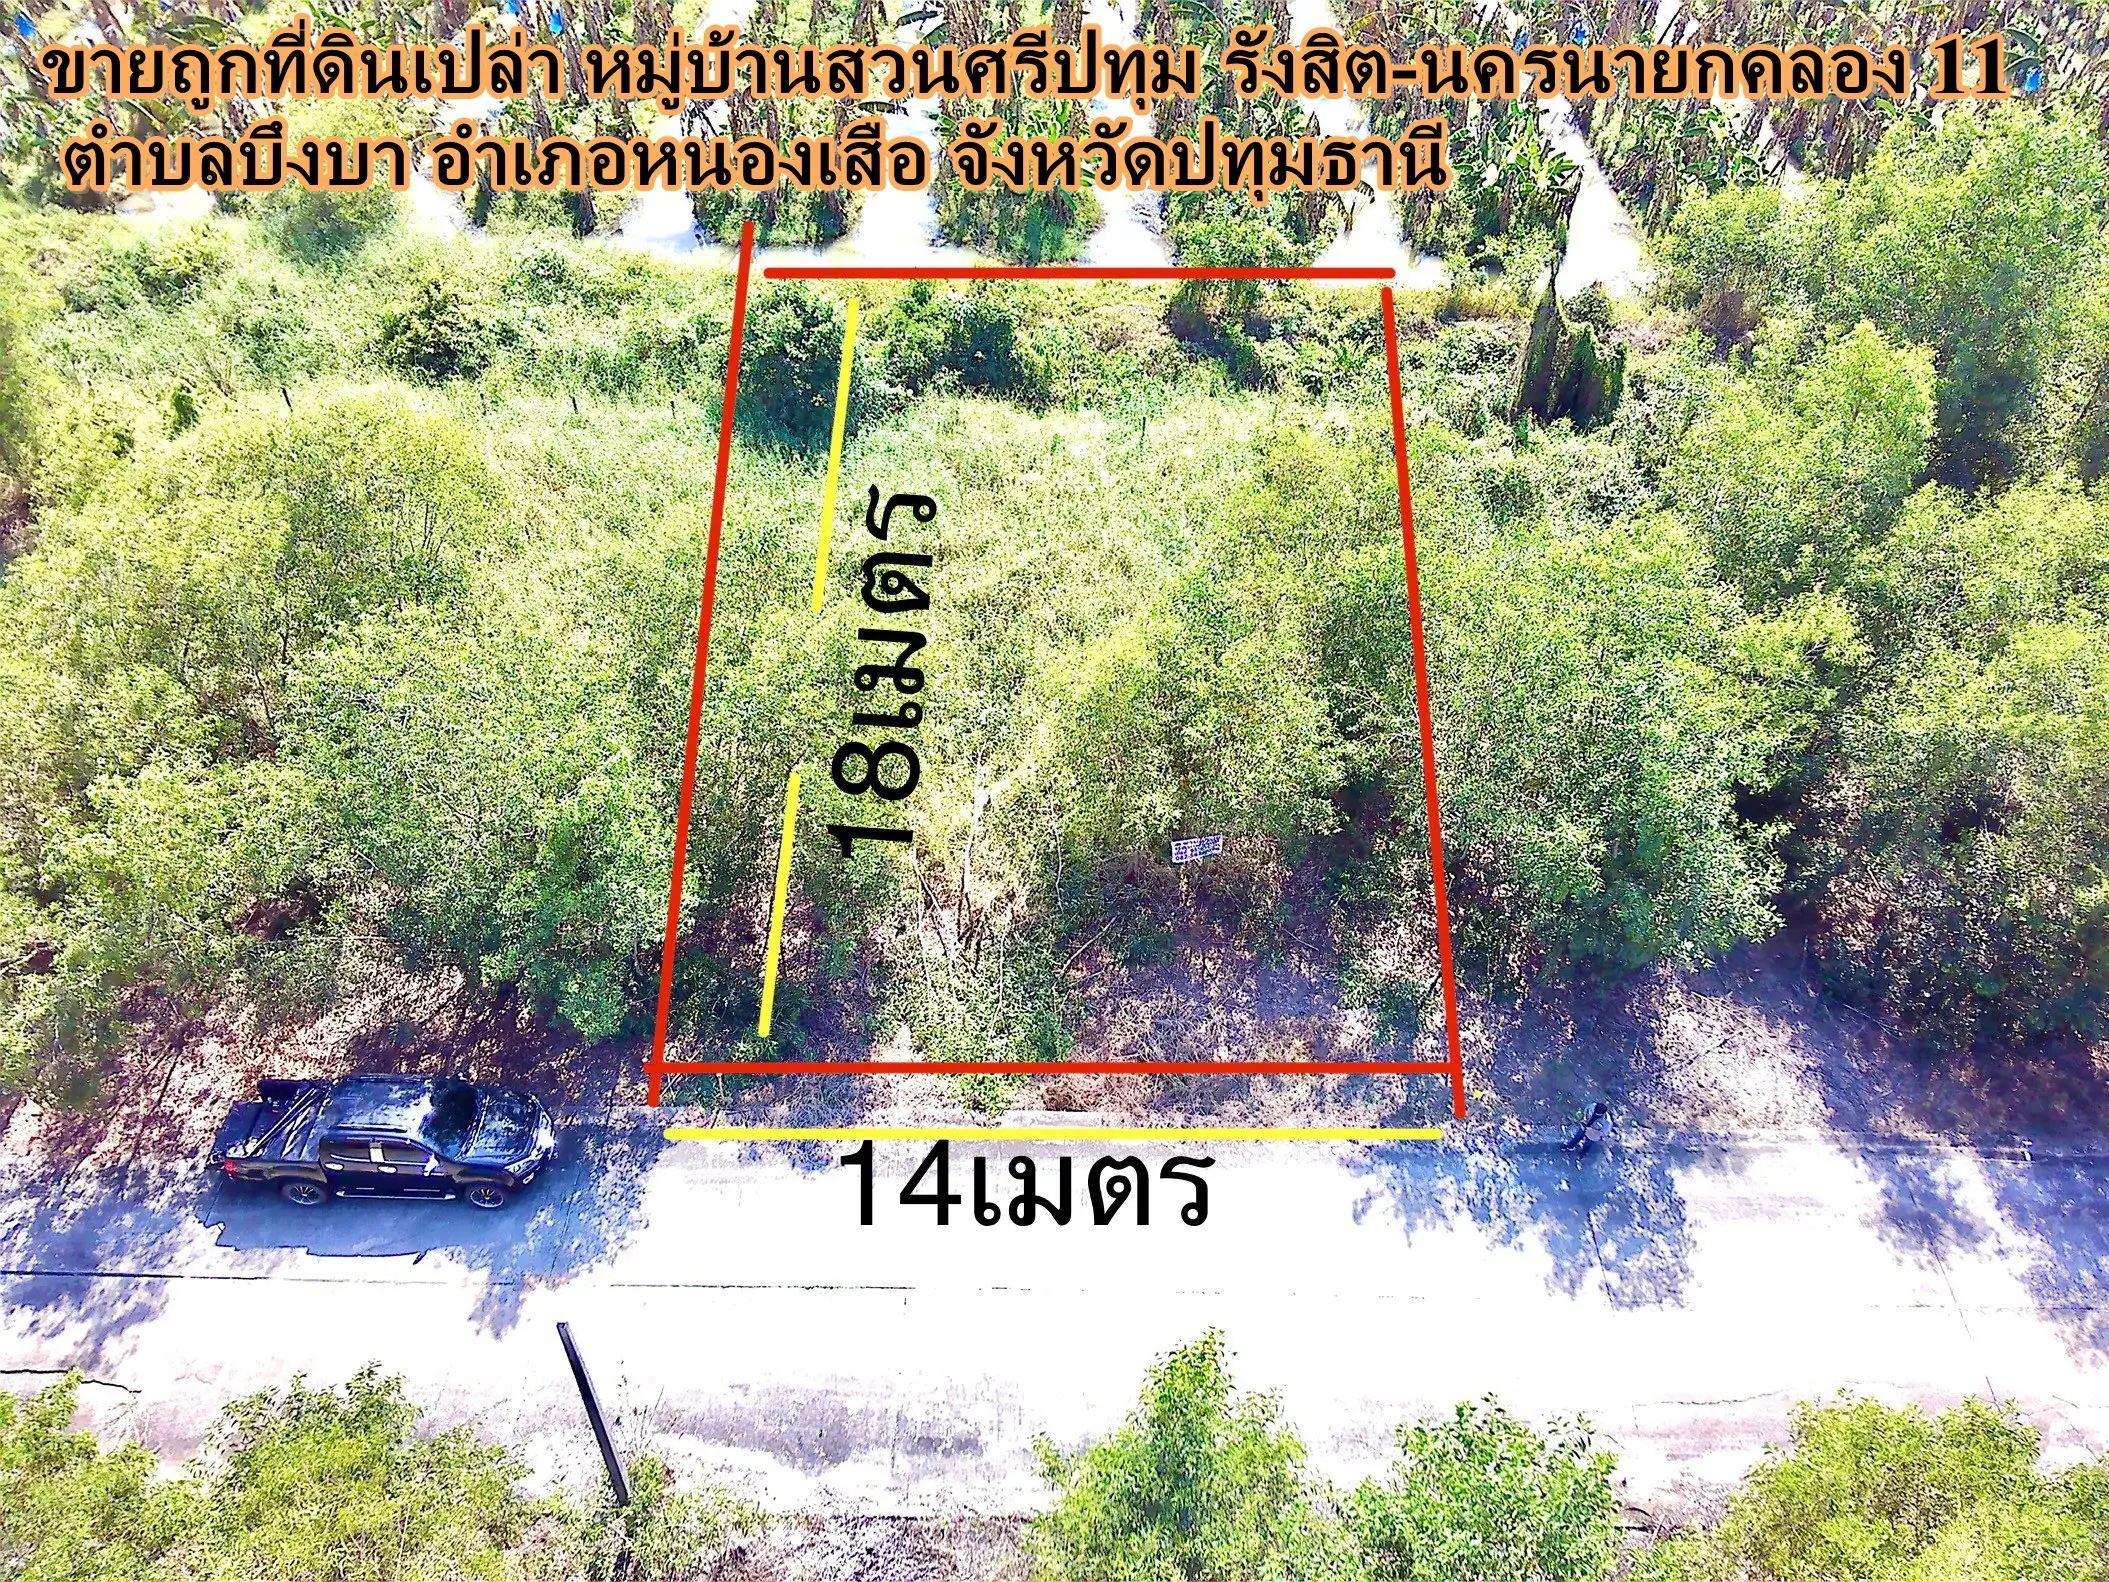 土地被廉价出售。苏恩斯里帕顿村 Rangsit-Nakhon Nayok Klong 11